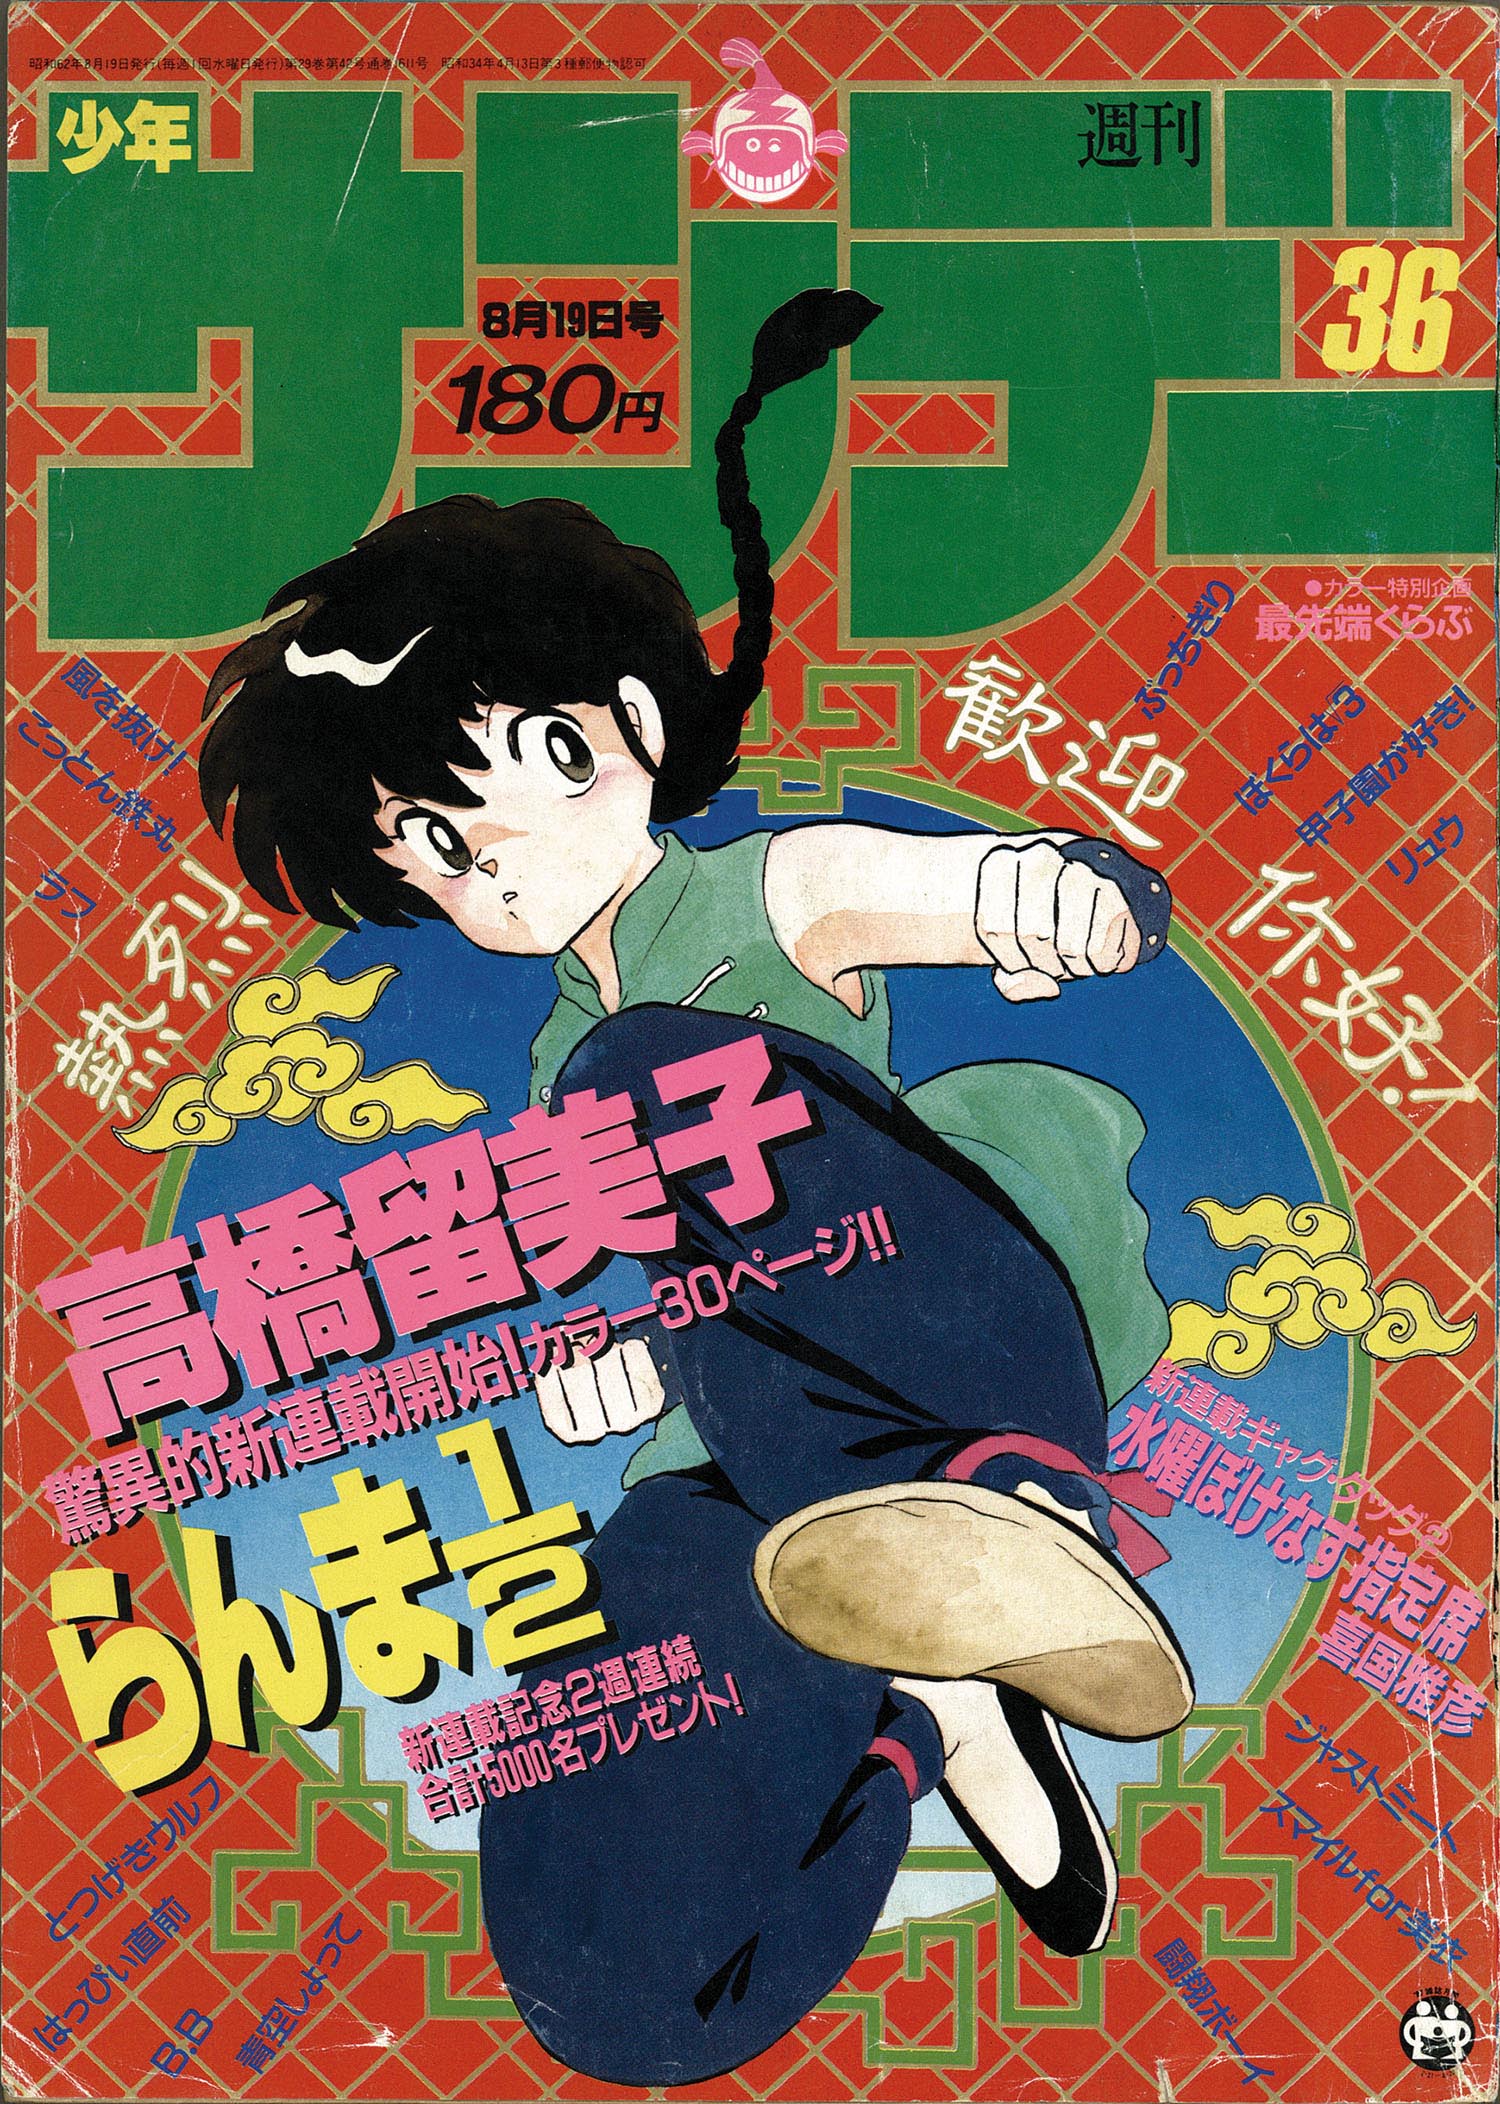 らんま1/2 コミック 全38巻完結セット (少年サンデーコミックス 